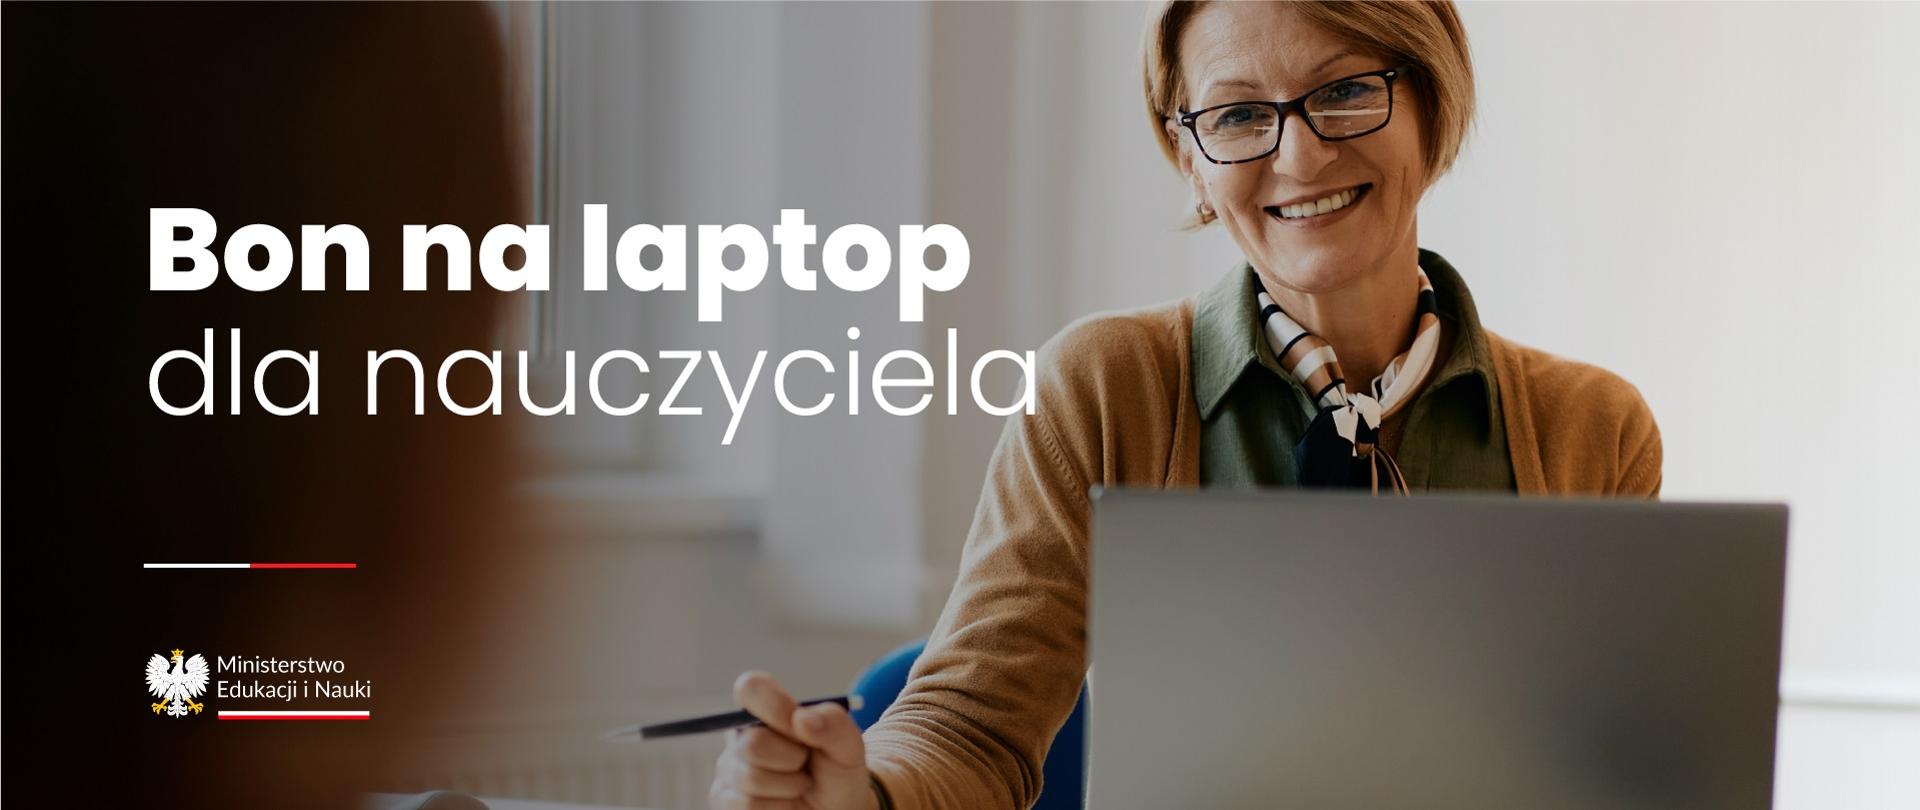 Uśmiechnięta nauczycielka siedzi przed otwartym laptopem, obok napis Bon na laptop dla nauczyciela.